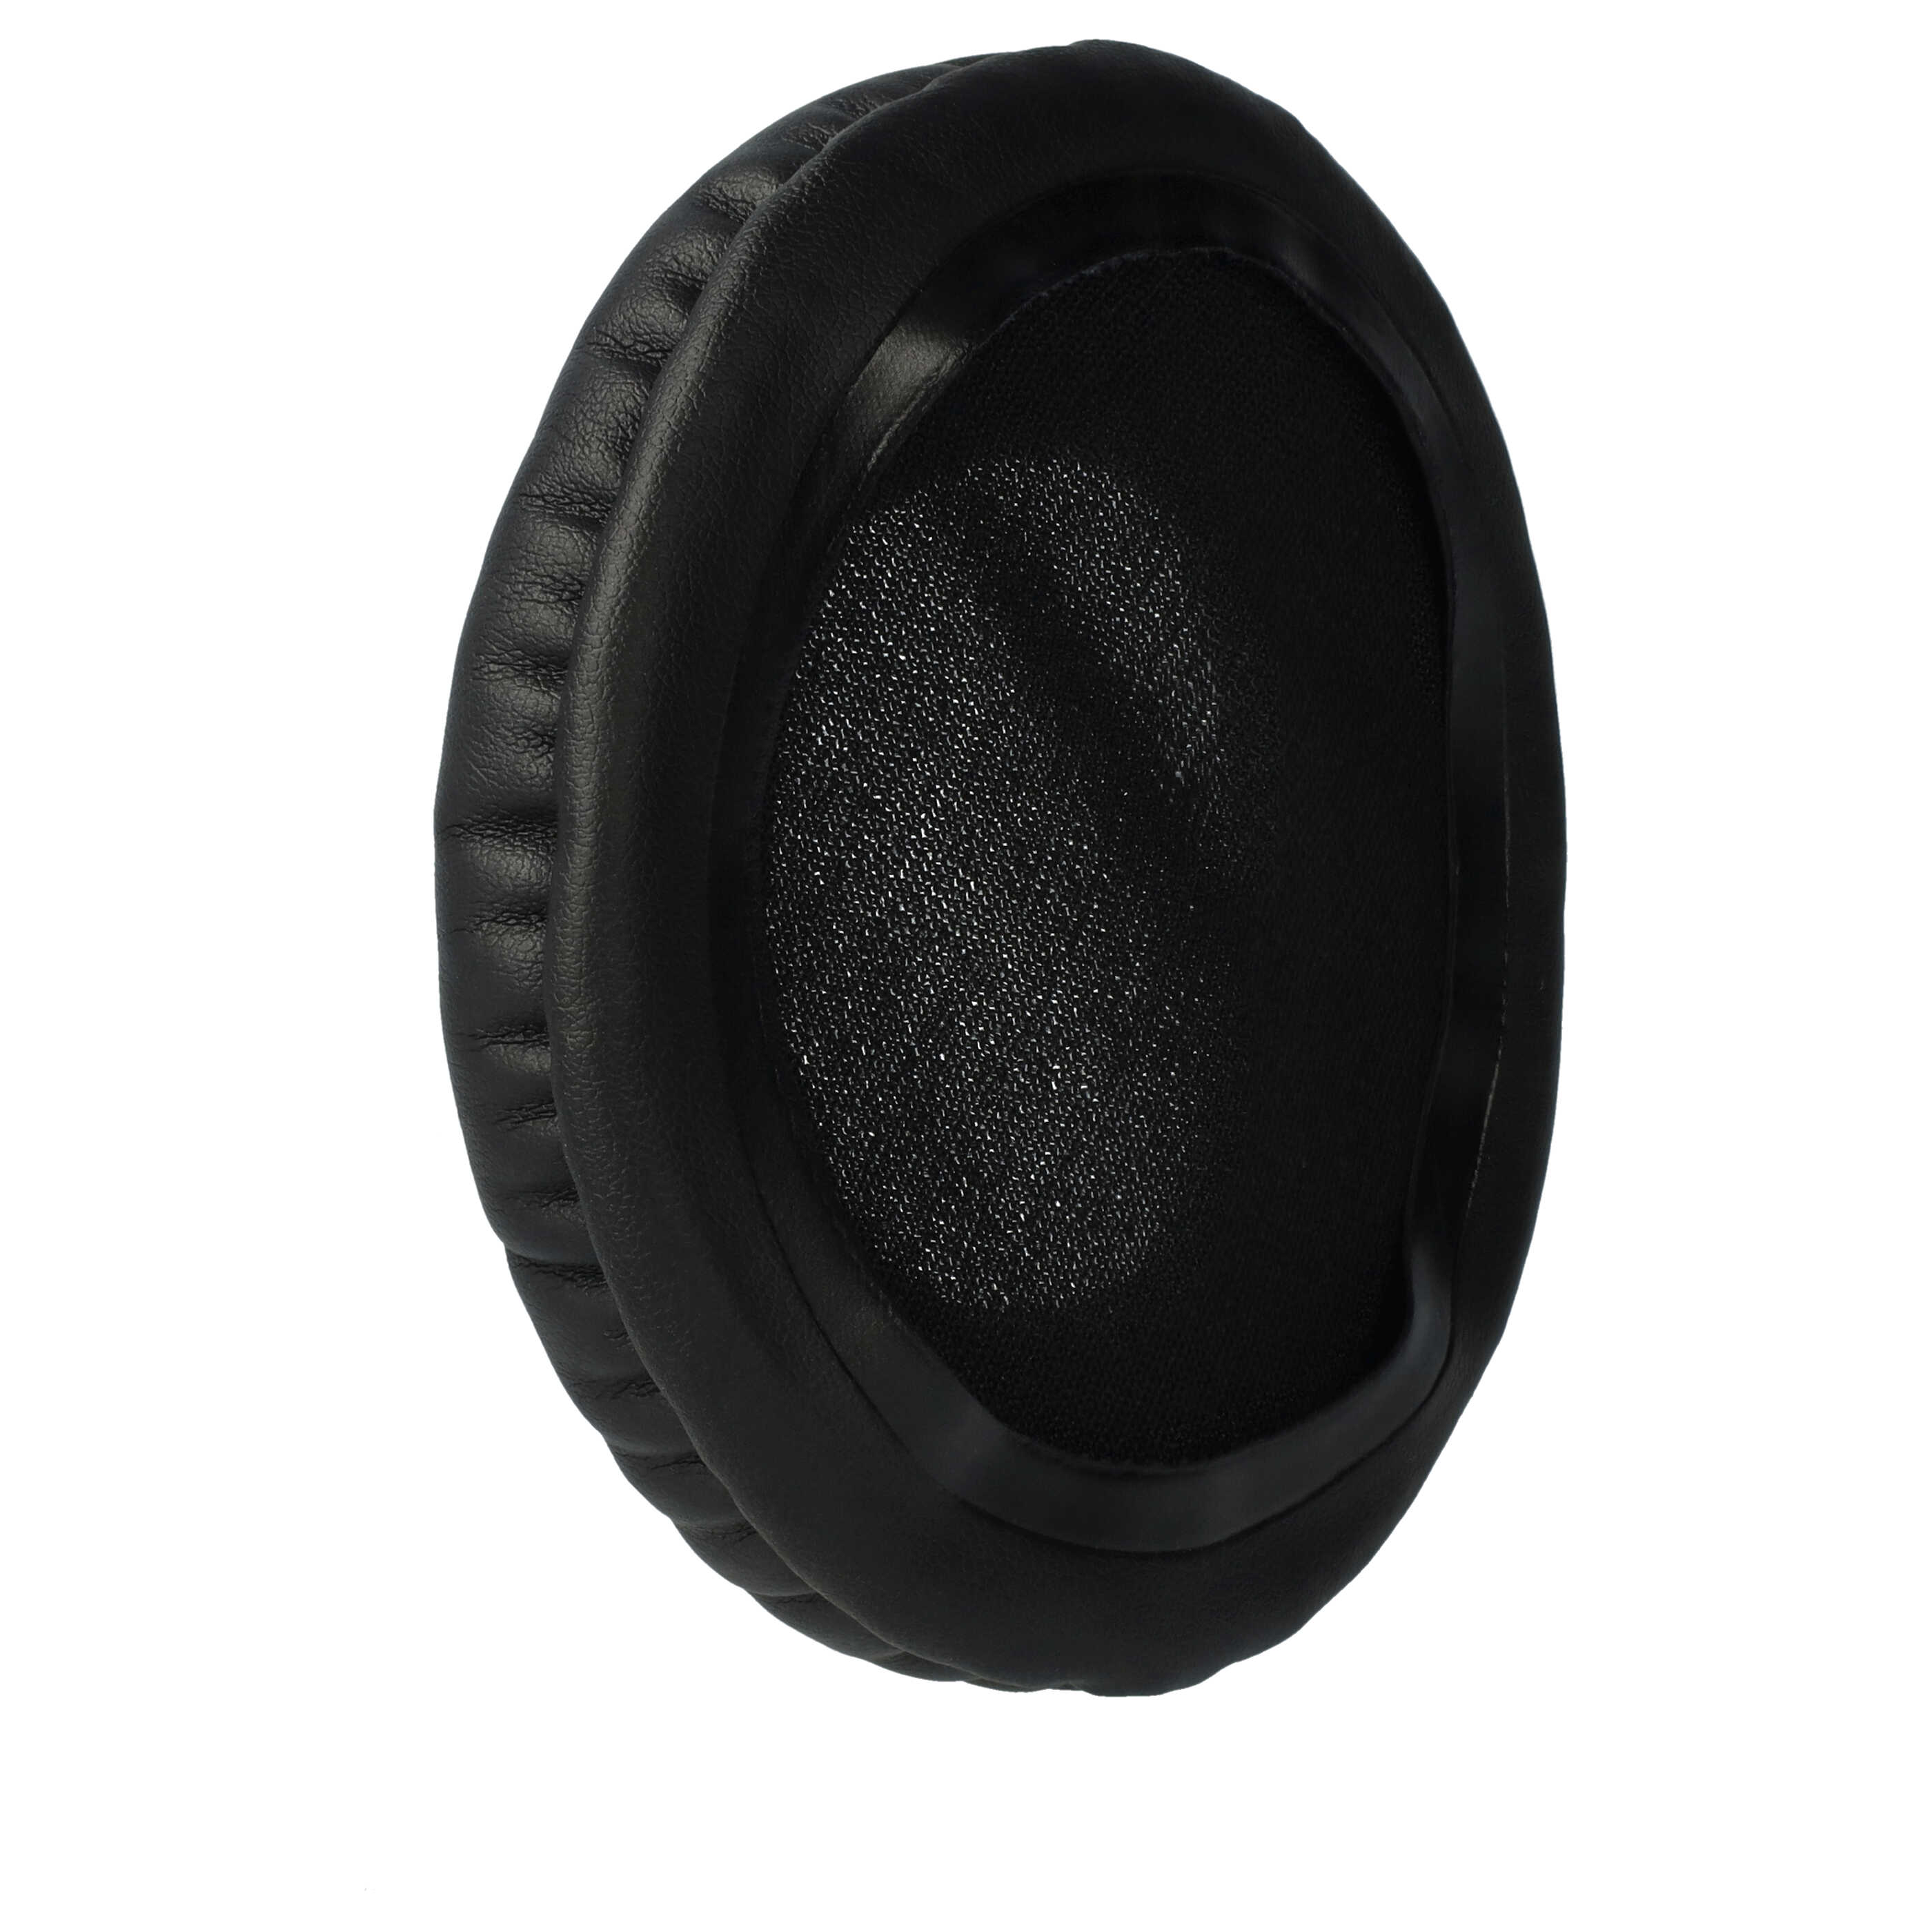 2x Almohadilla para auriculares Technics RP-DH1200, RPDH1200 - poliuretano / espuma negro